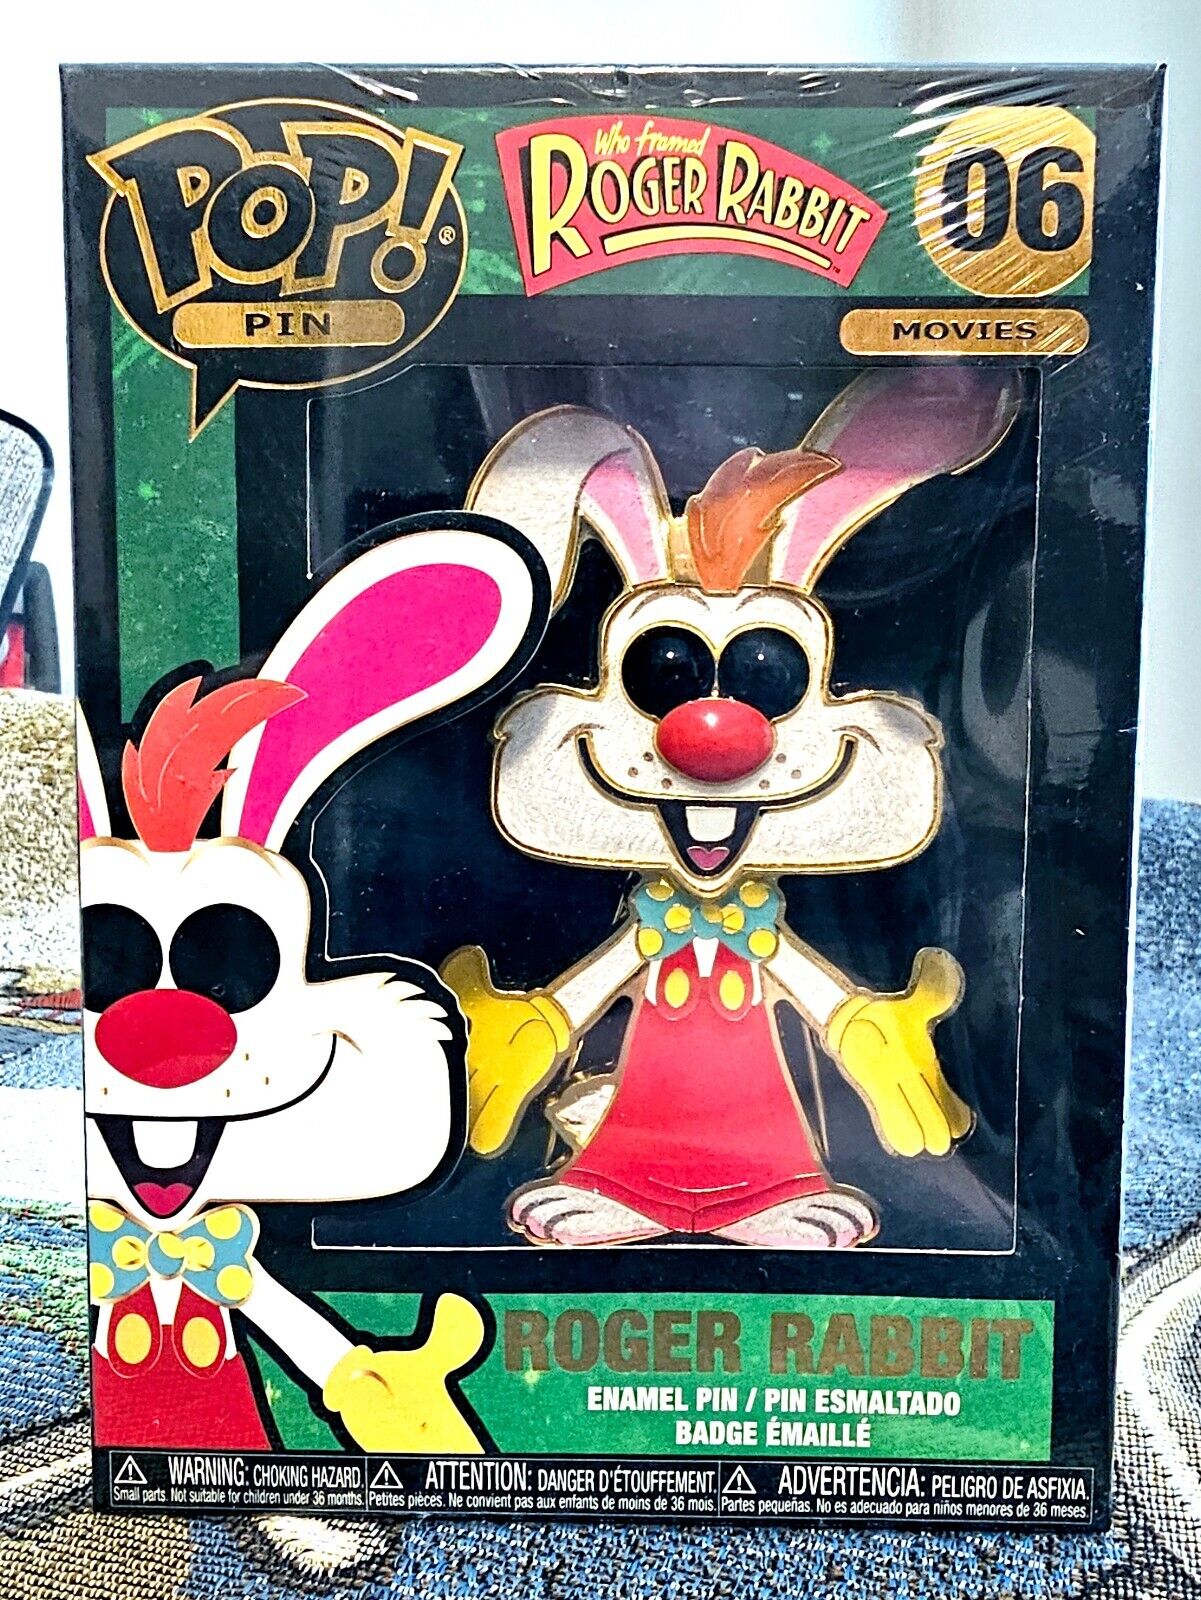 Funko Pop Roger Rabbit 06 Enamel Pin Figure 4.5 inch NEW Who Framed Roger Rabbit